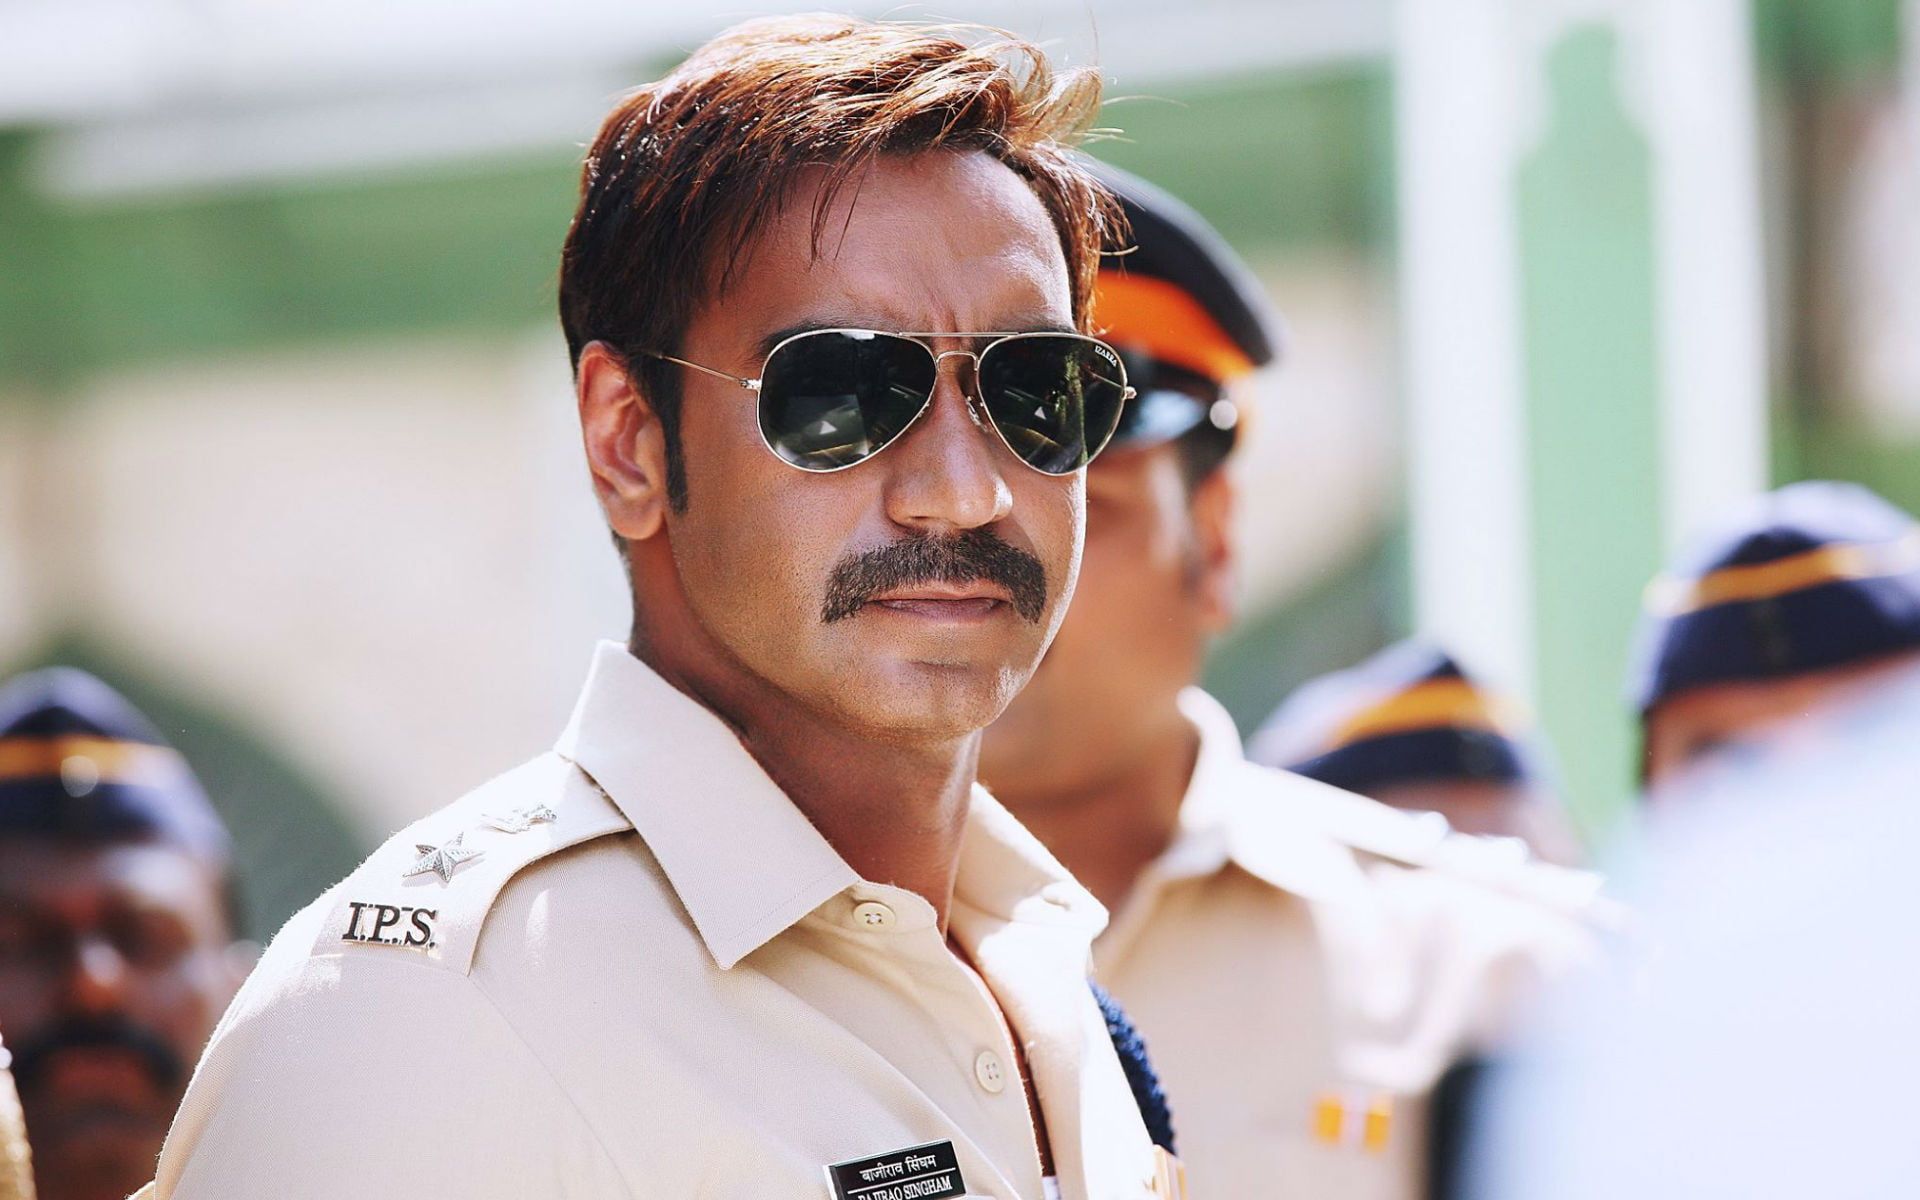 Ajay Devgan In Singham Returns Men's Black Lens Aviator Style Sunglasses With Black Frames #Mov. Aviator Sunglasses Style, Aviator Style, Fashion Sunglasses